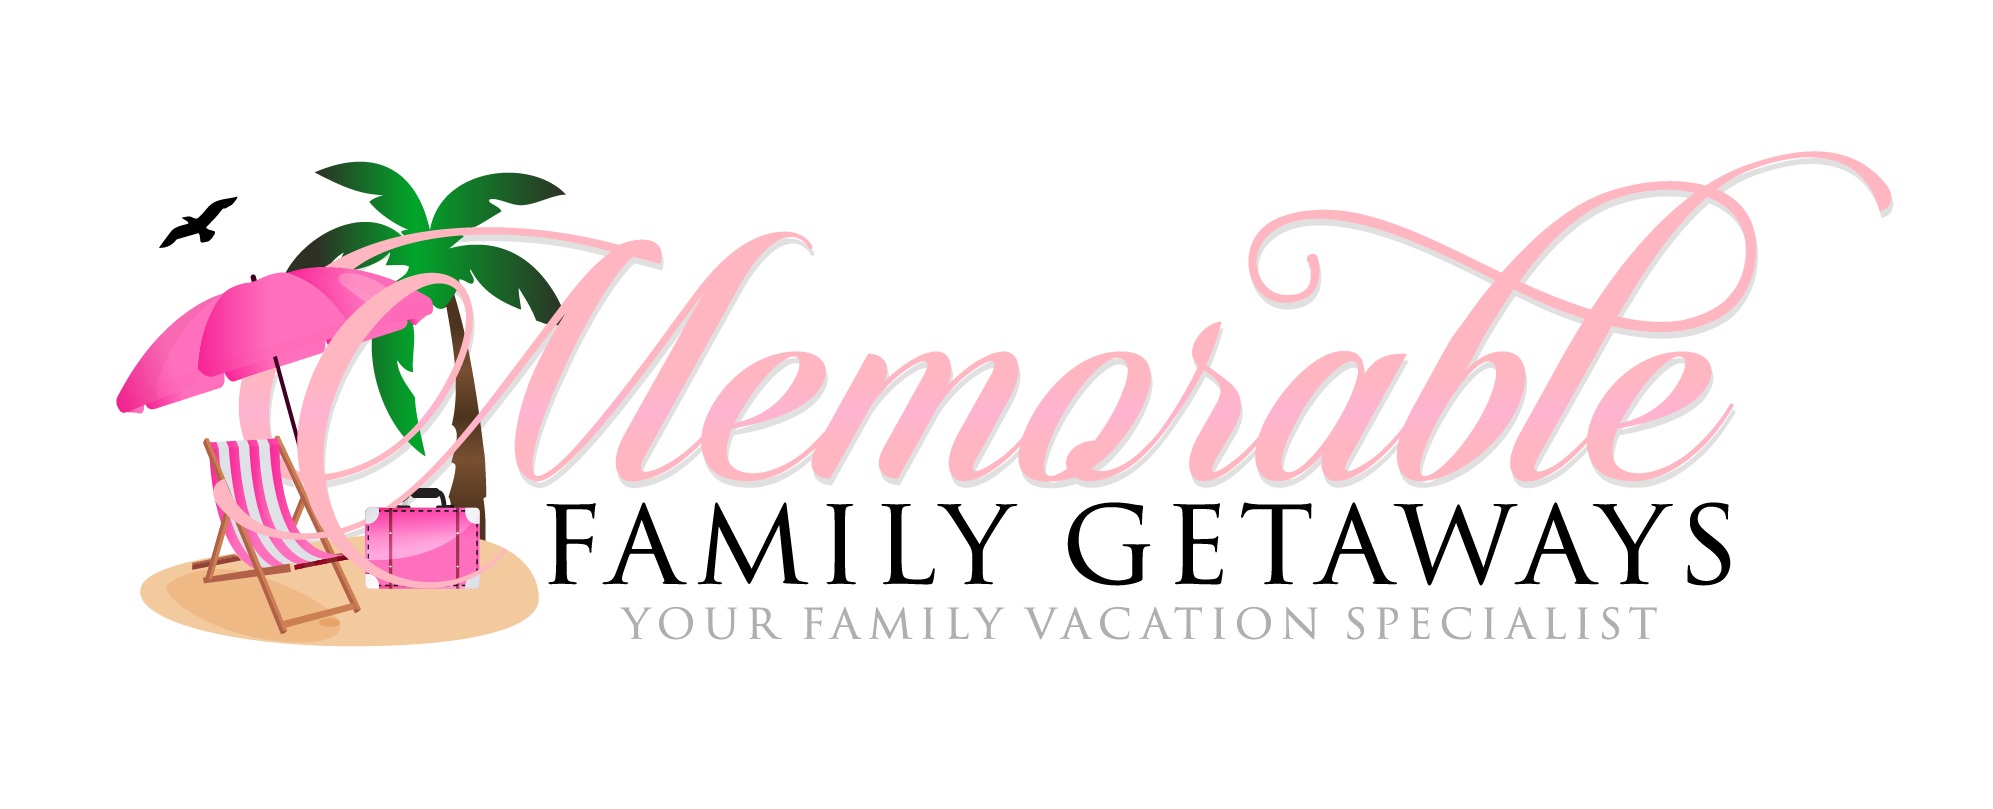 Memorable Family Getaways LLC